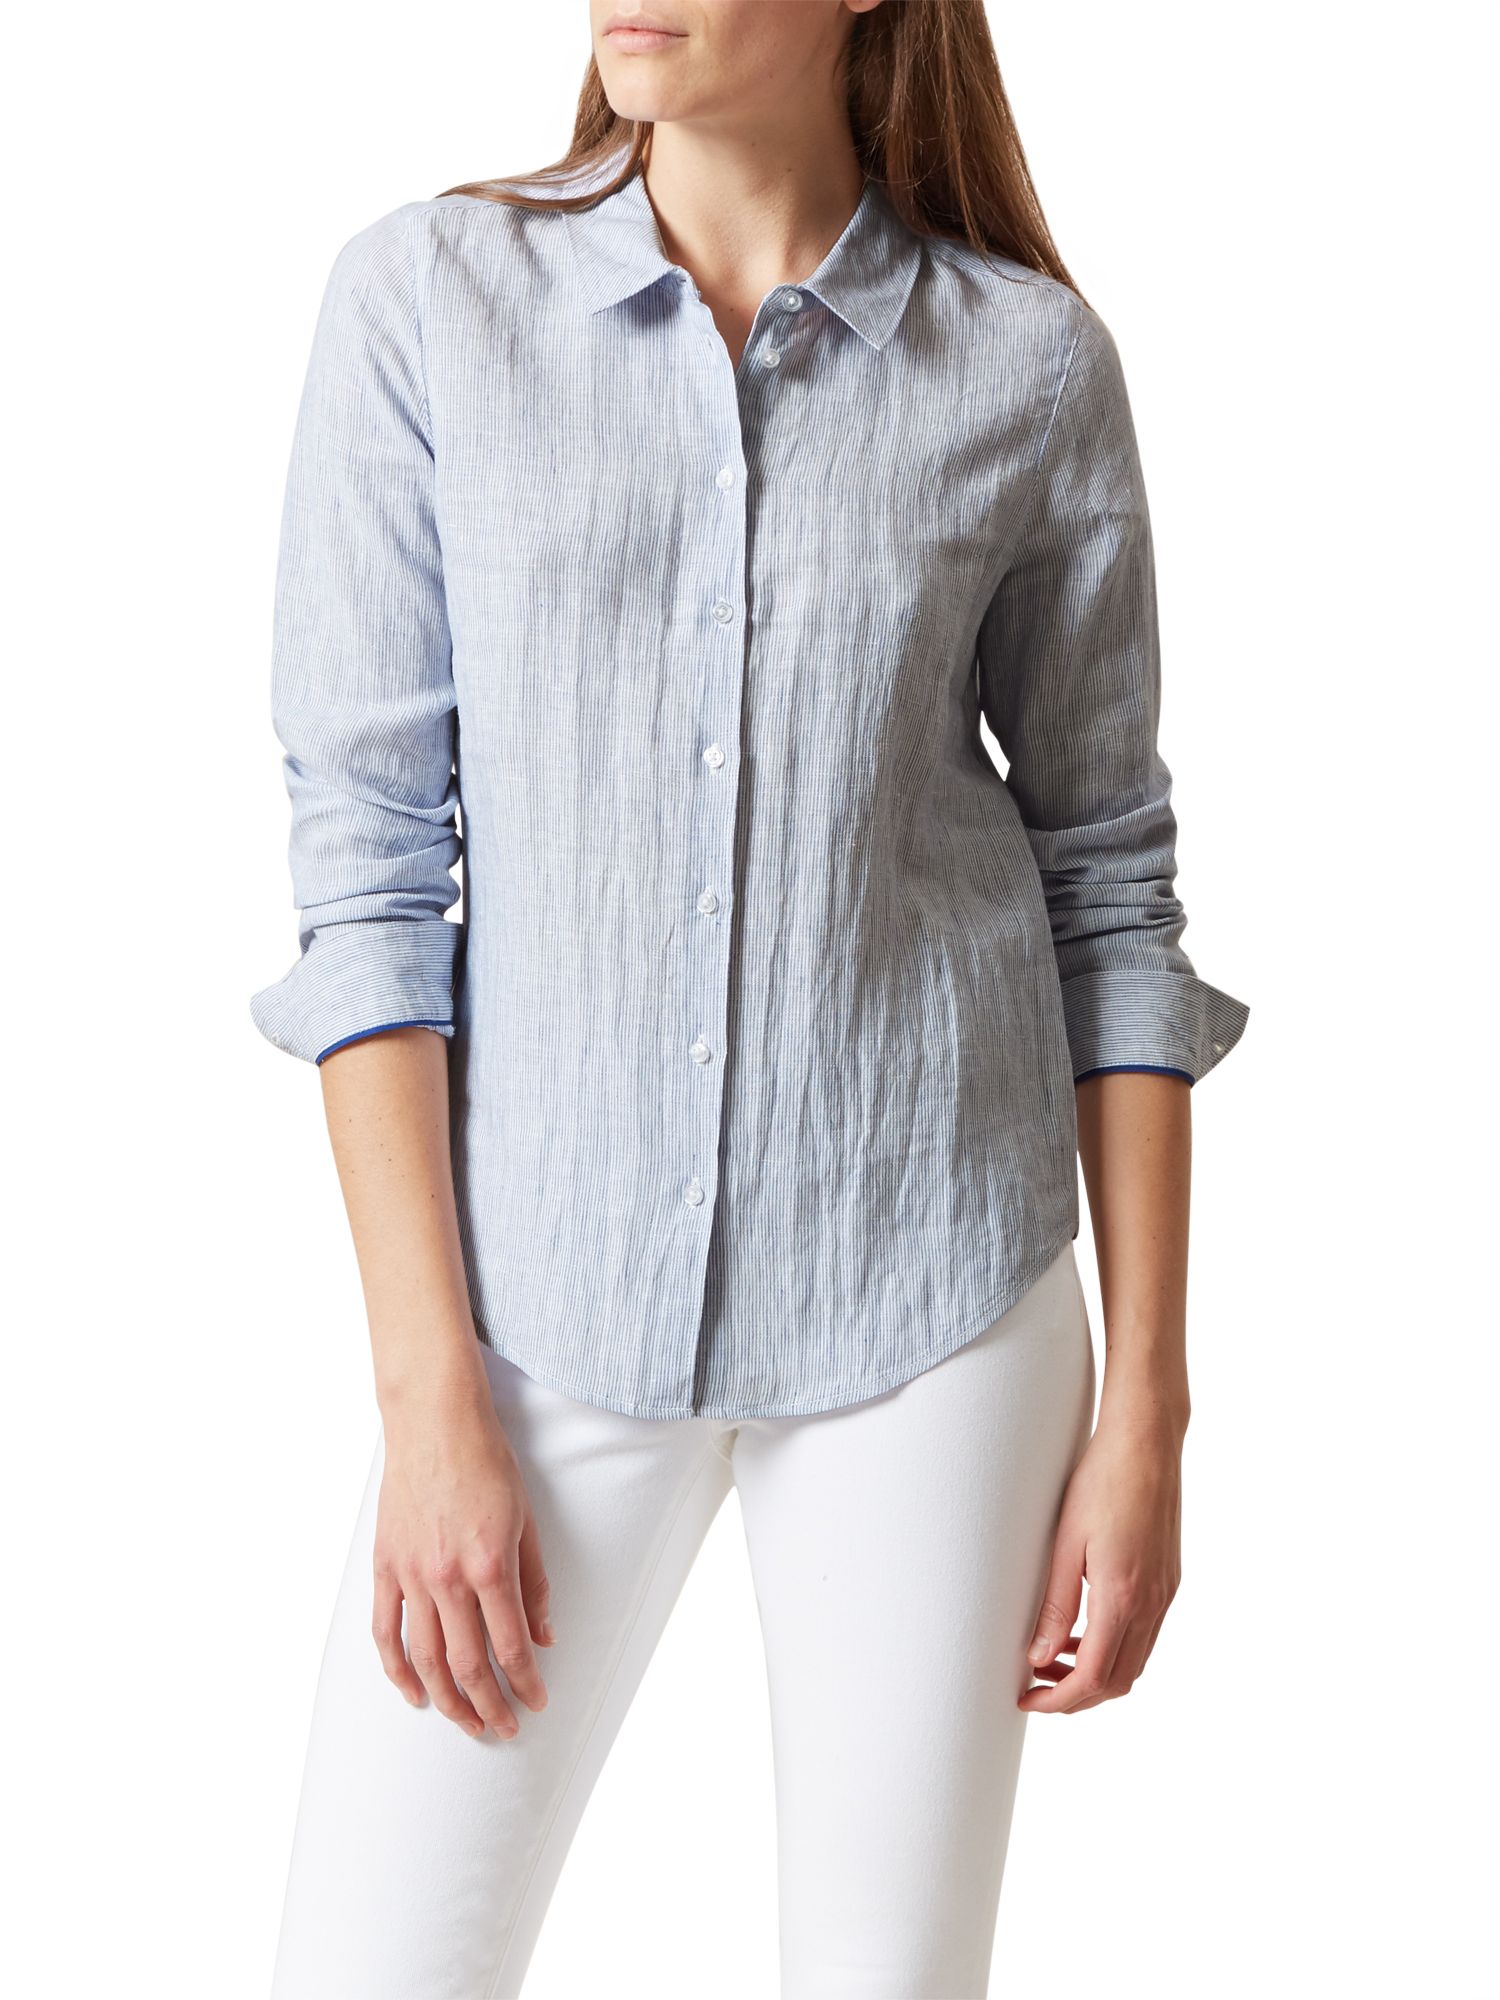 Hobbs Marianne Stripe Linen Shirt, Blue/White